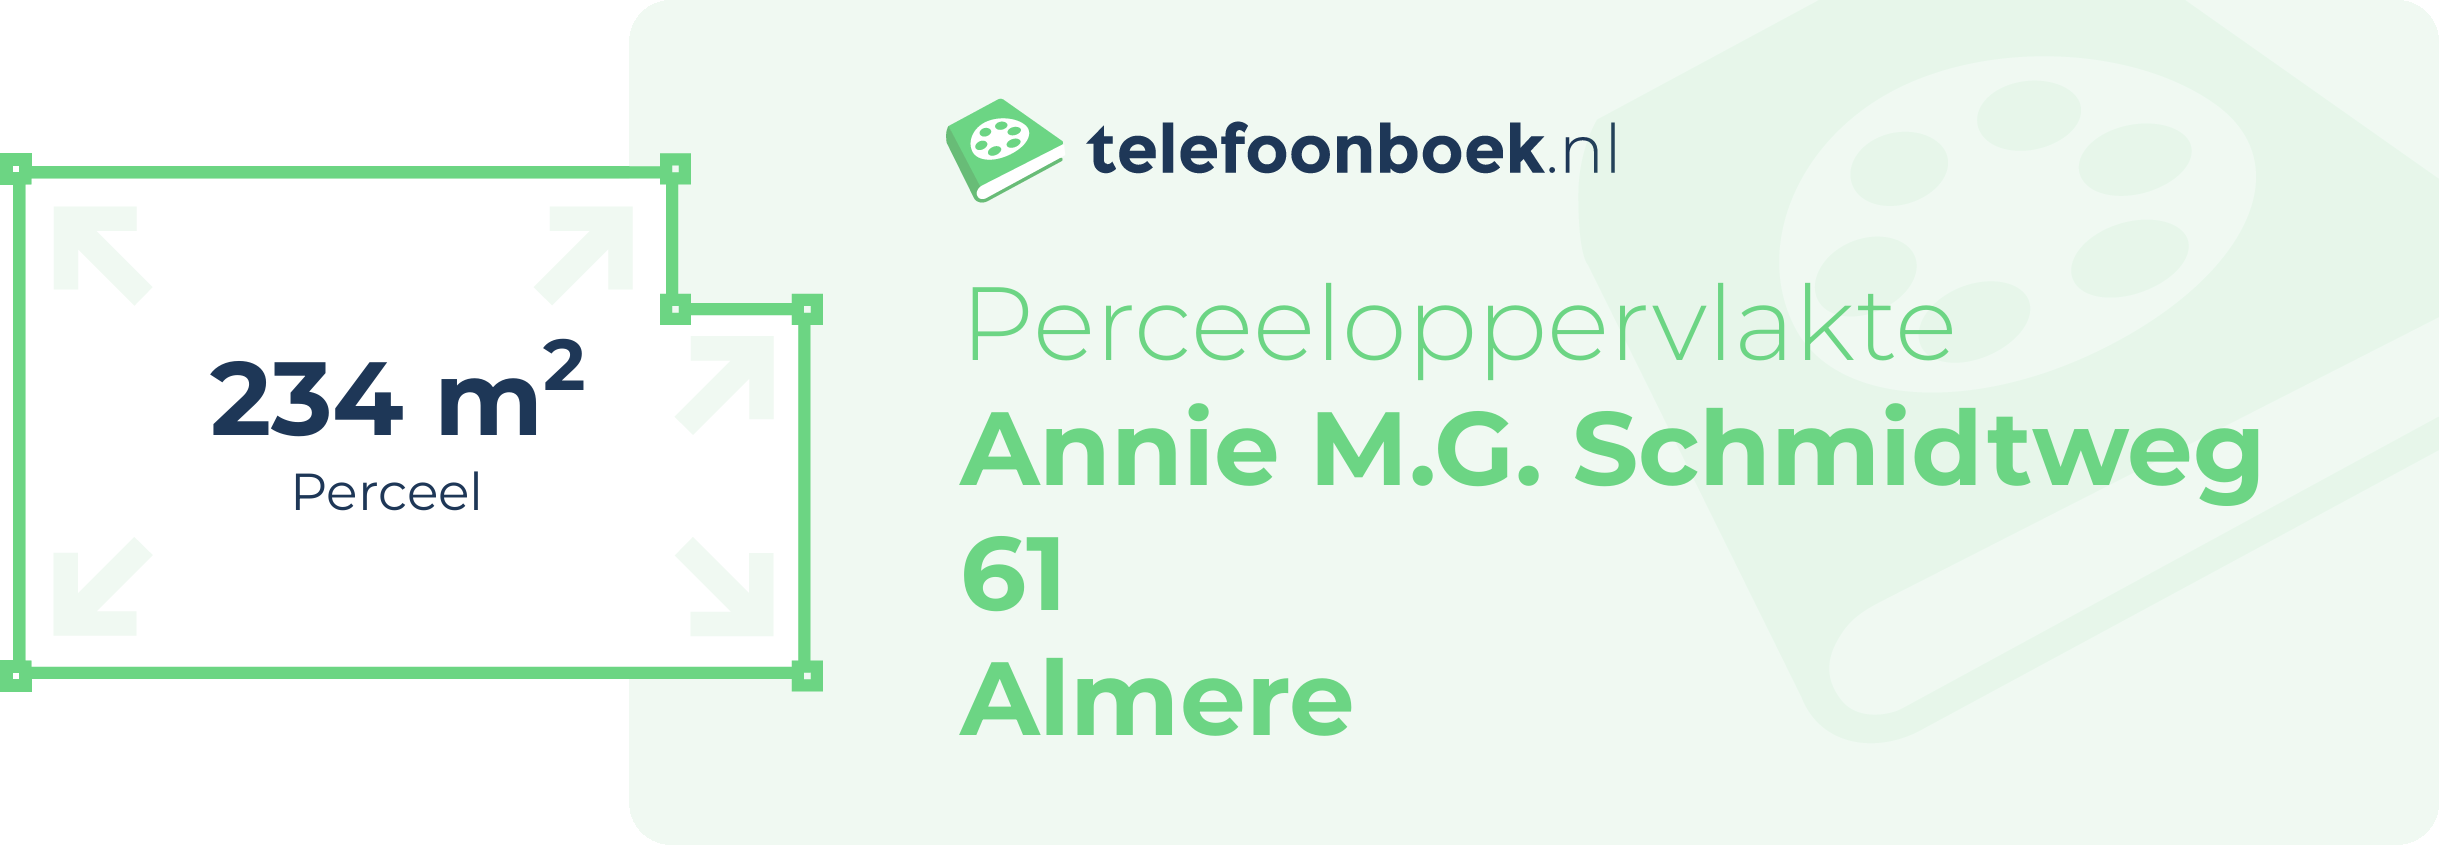 Perceeloppervlakte Annie M.G. Schmidtweg 61 Almere